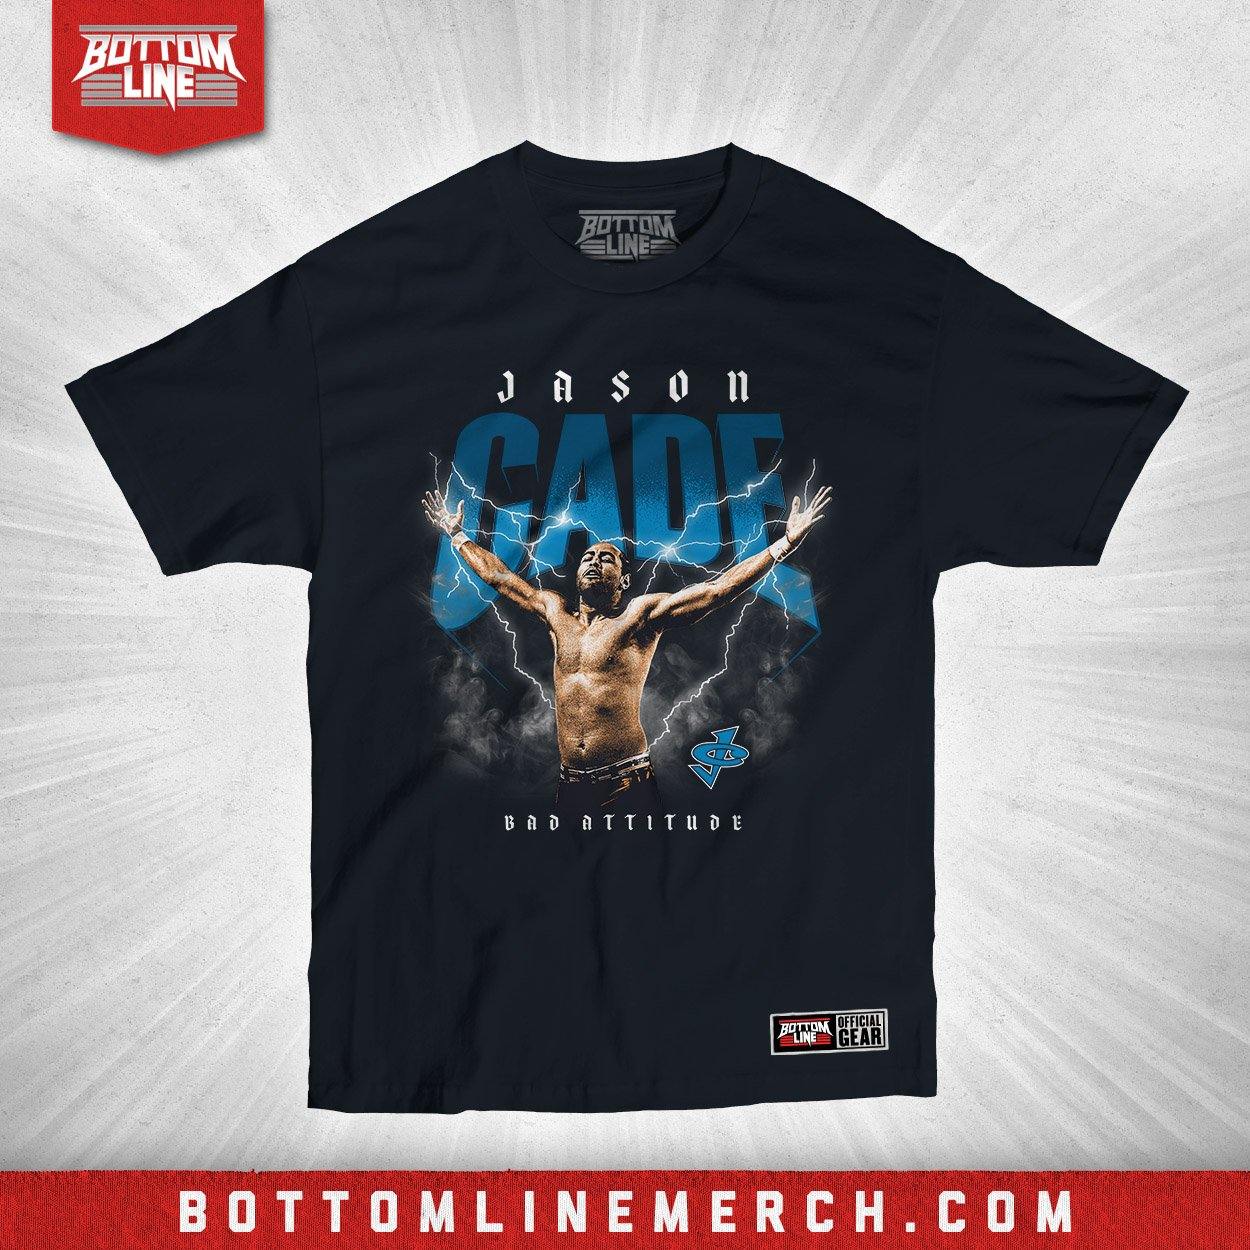 Buy Now – Jason Cade "Lightning" Shirt – Wrestler & Wrestling Merch – Bottom Line